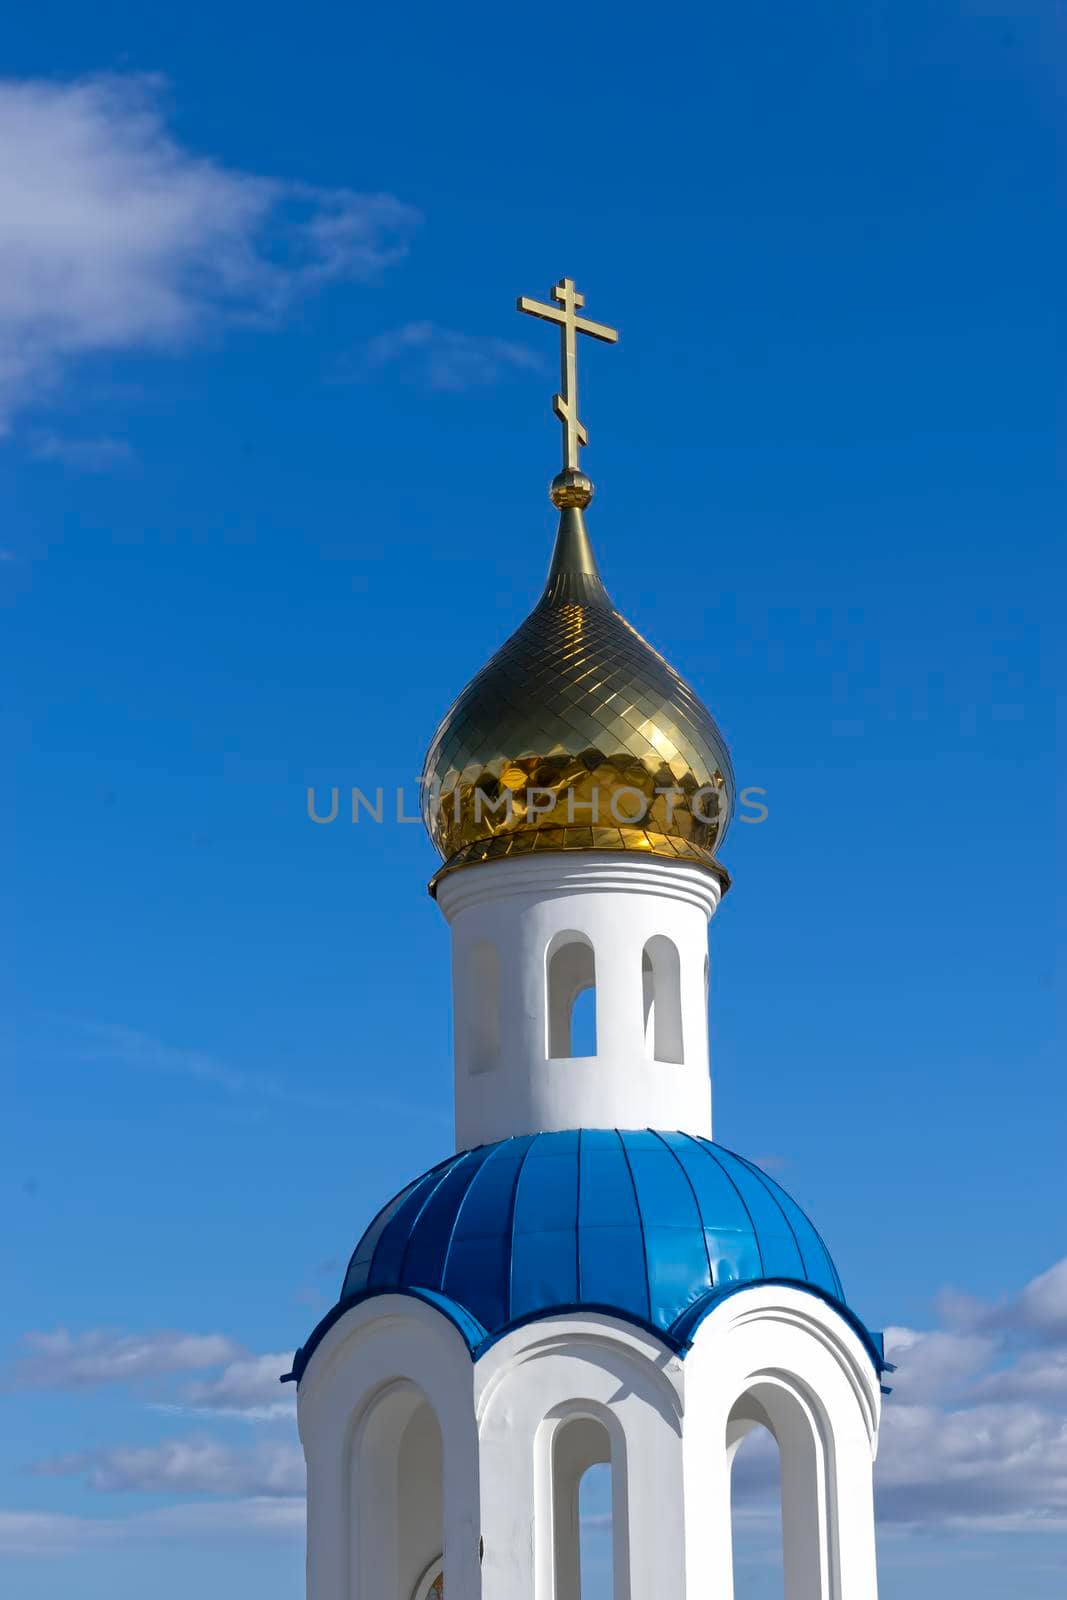 Chapel in the Church of St. Nicholas the Wonderworker Petropavlovsk-Kamchatsky, Russia